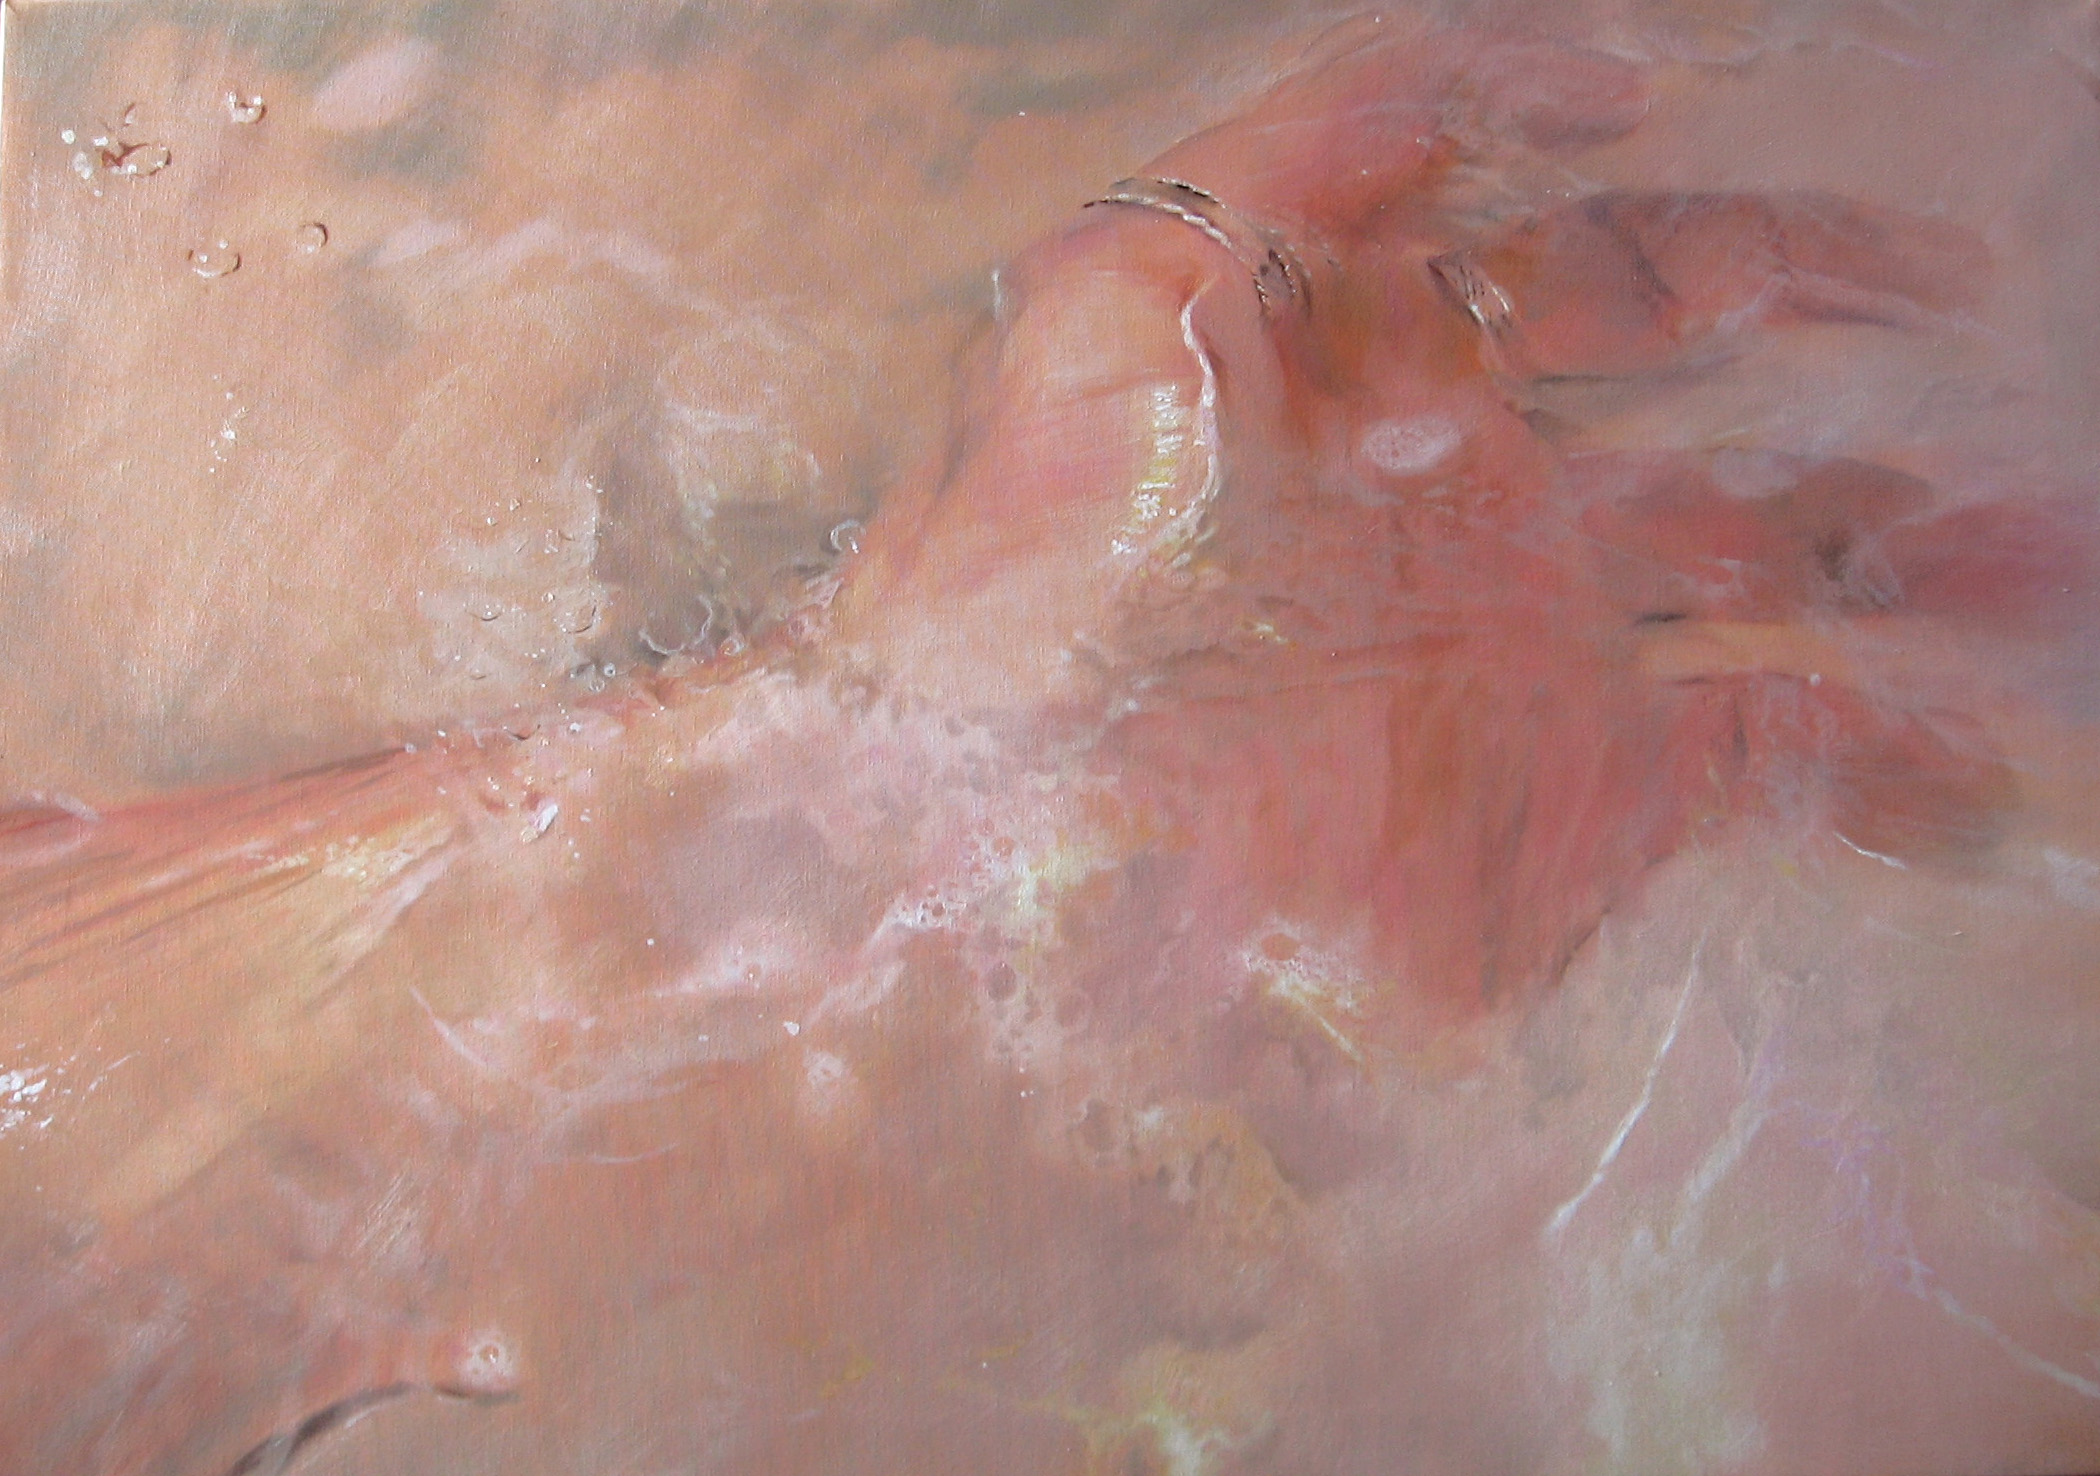 
'Amputazione del gesto' 
(2008), 
olio su tela, 
70x100 cm.
Collezione privata
